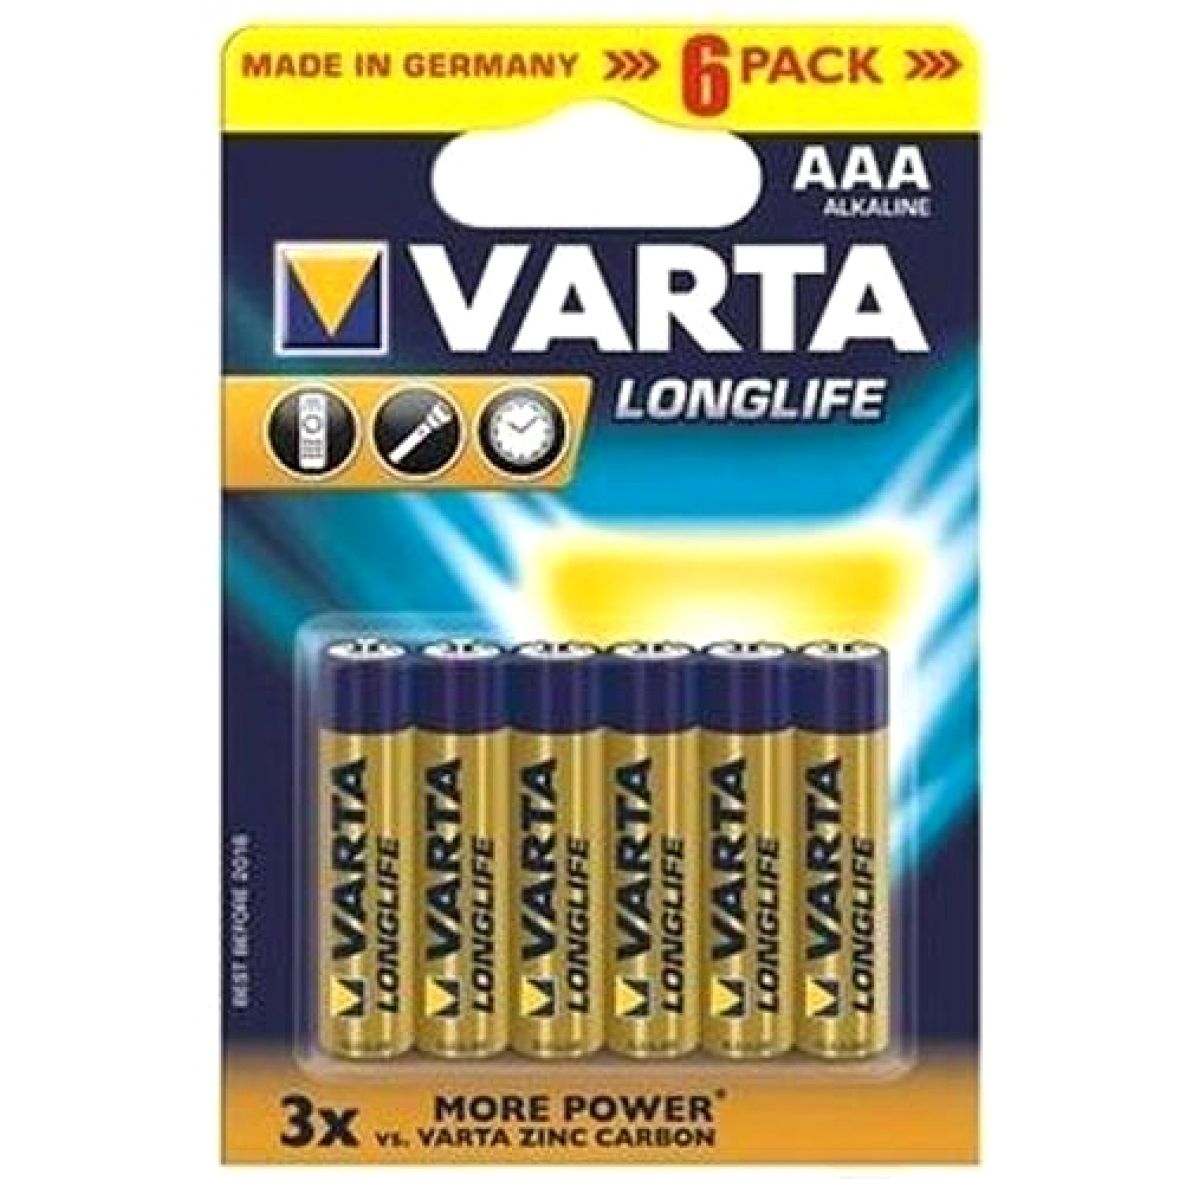 Baterie VARTA Longlife AAA LR03 mikrotužkové 6ks